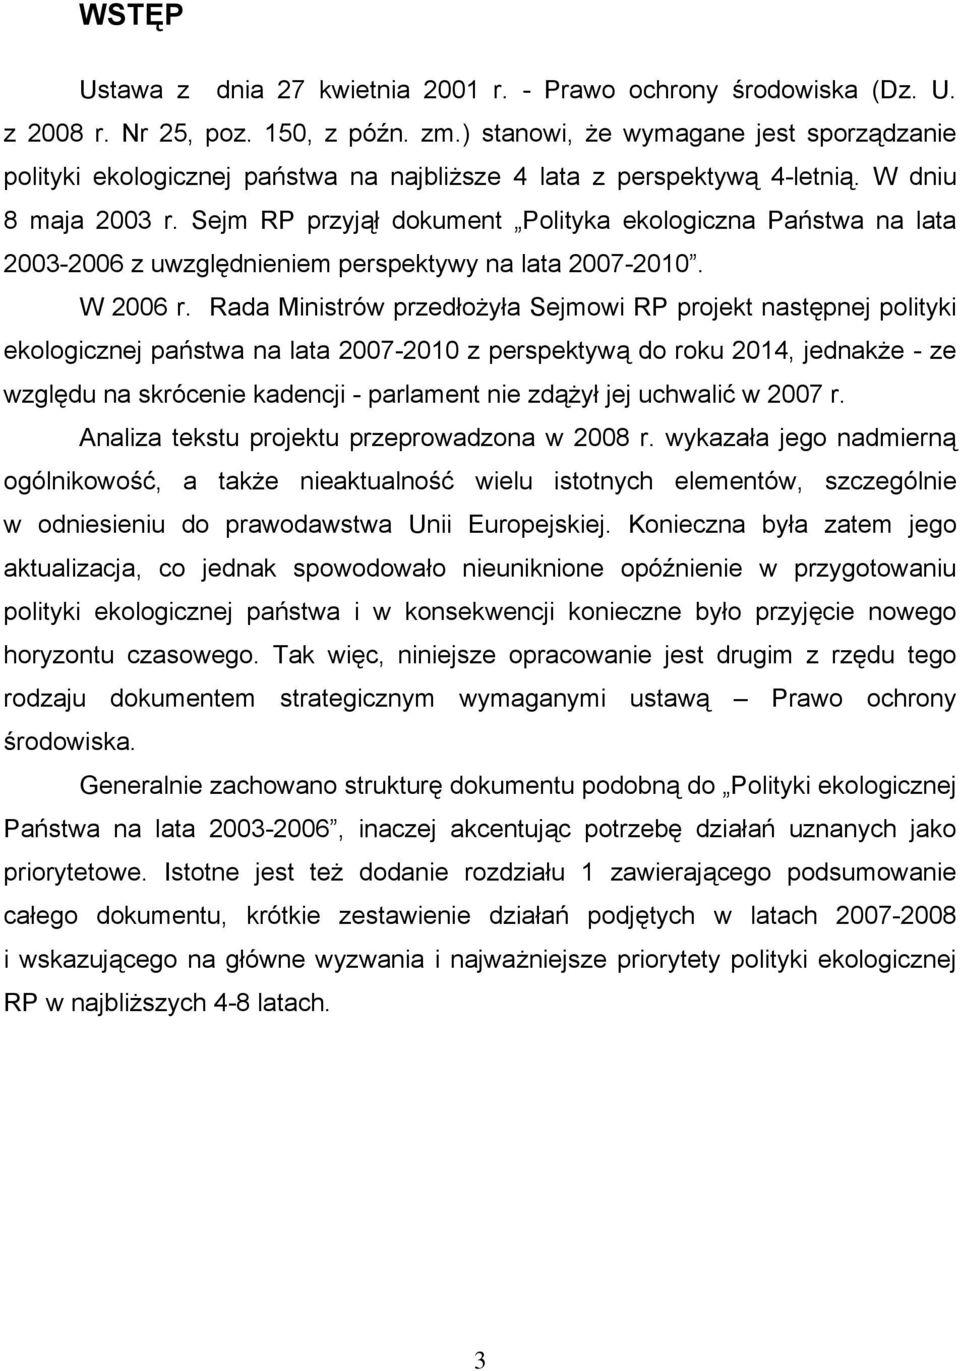 Sejm RP przyjął dokument Polityka ekologiczna Państwa na lata 2003-2006 z uwzględnieniem perspektywy na lata 2007-2010. W 2006 r.